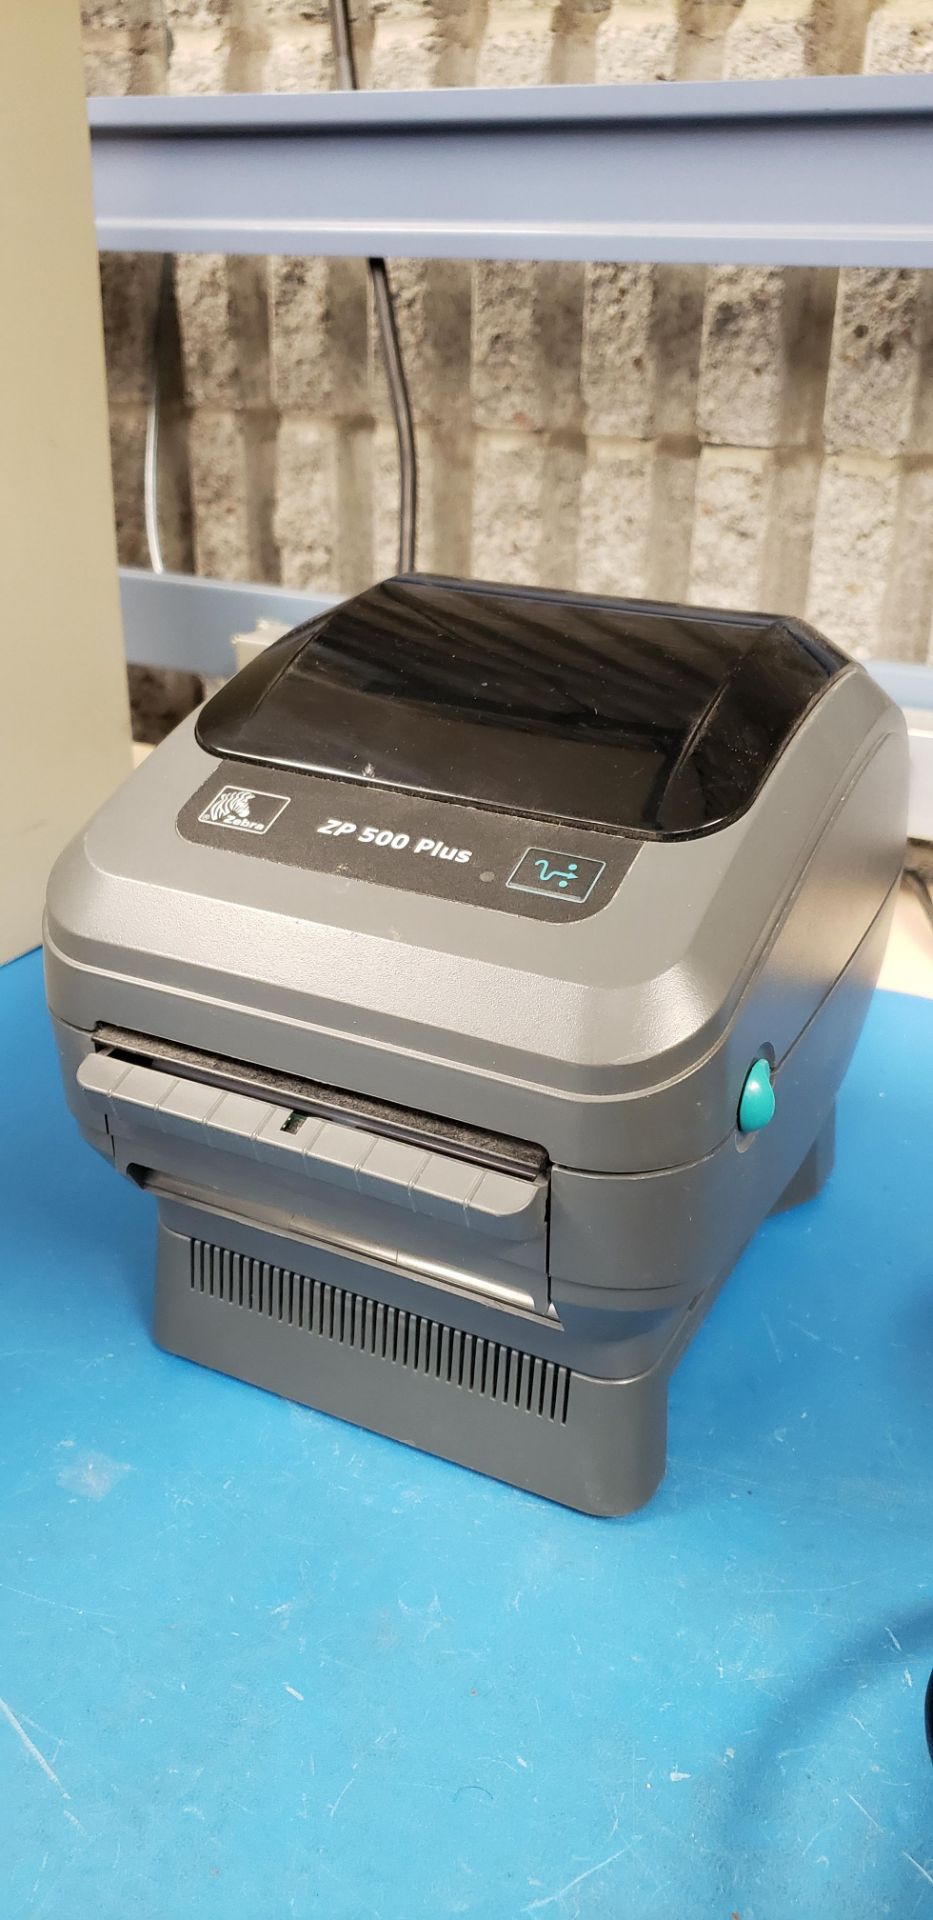 Zebra "ZP 500 Plus" Label Printer